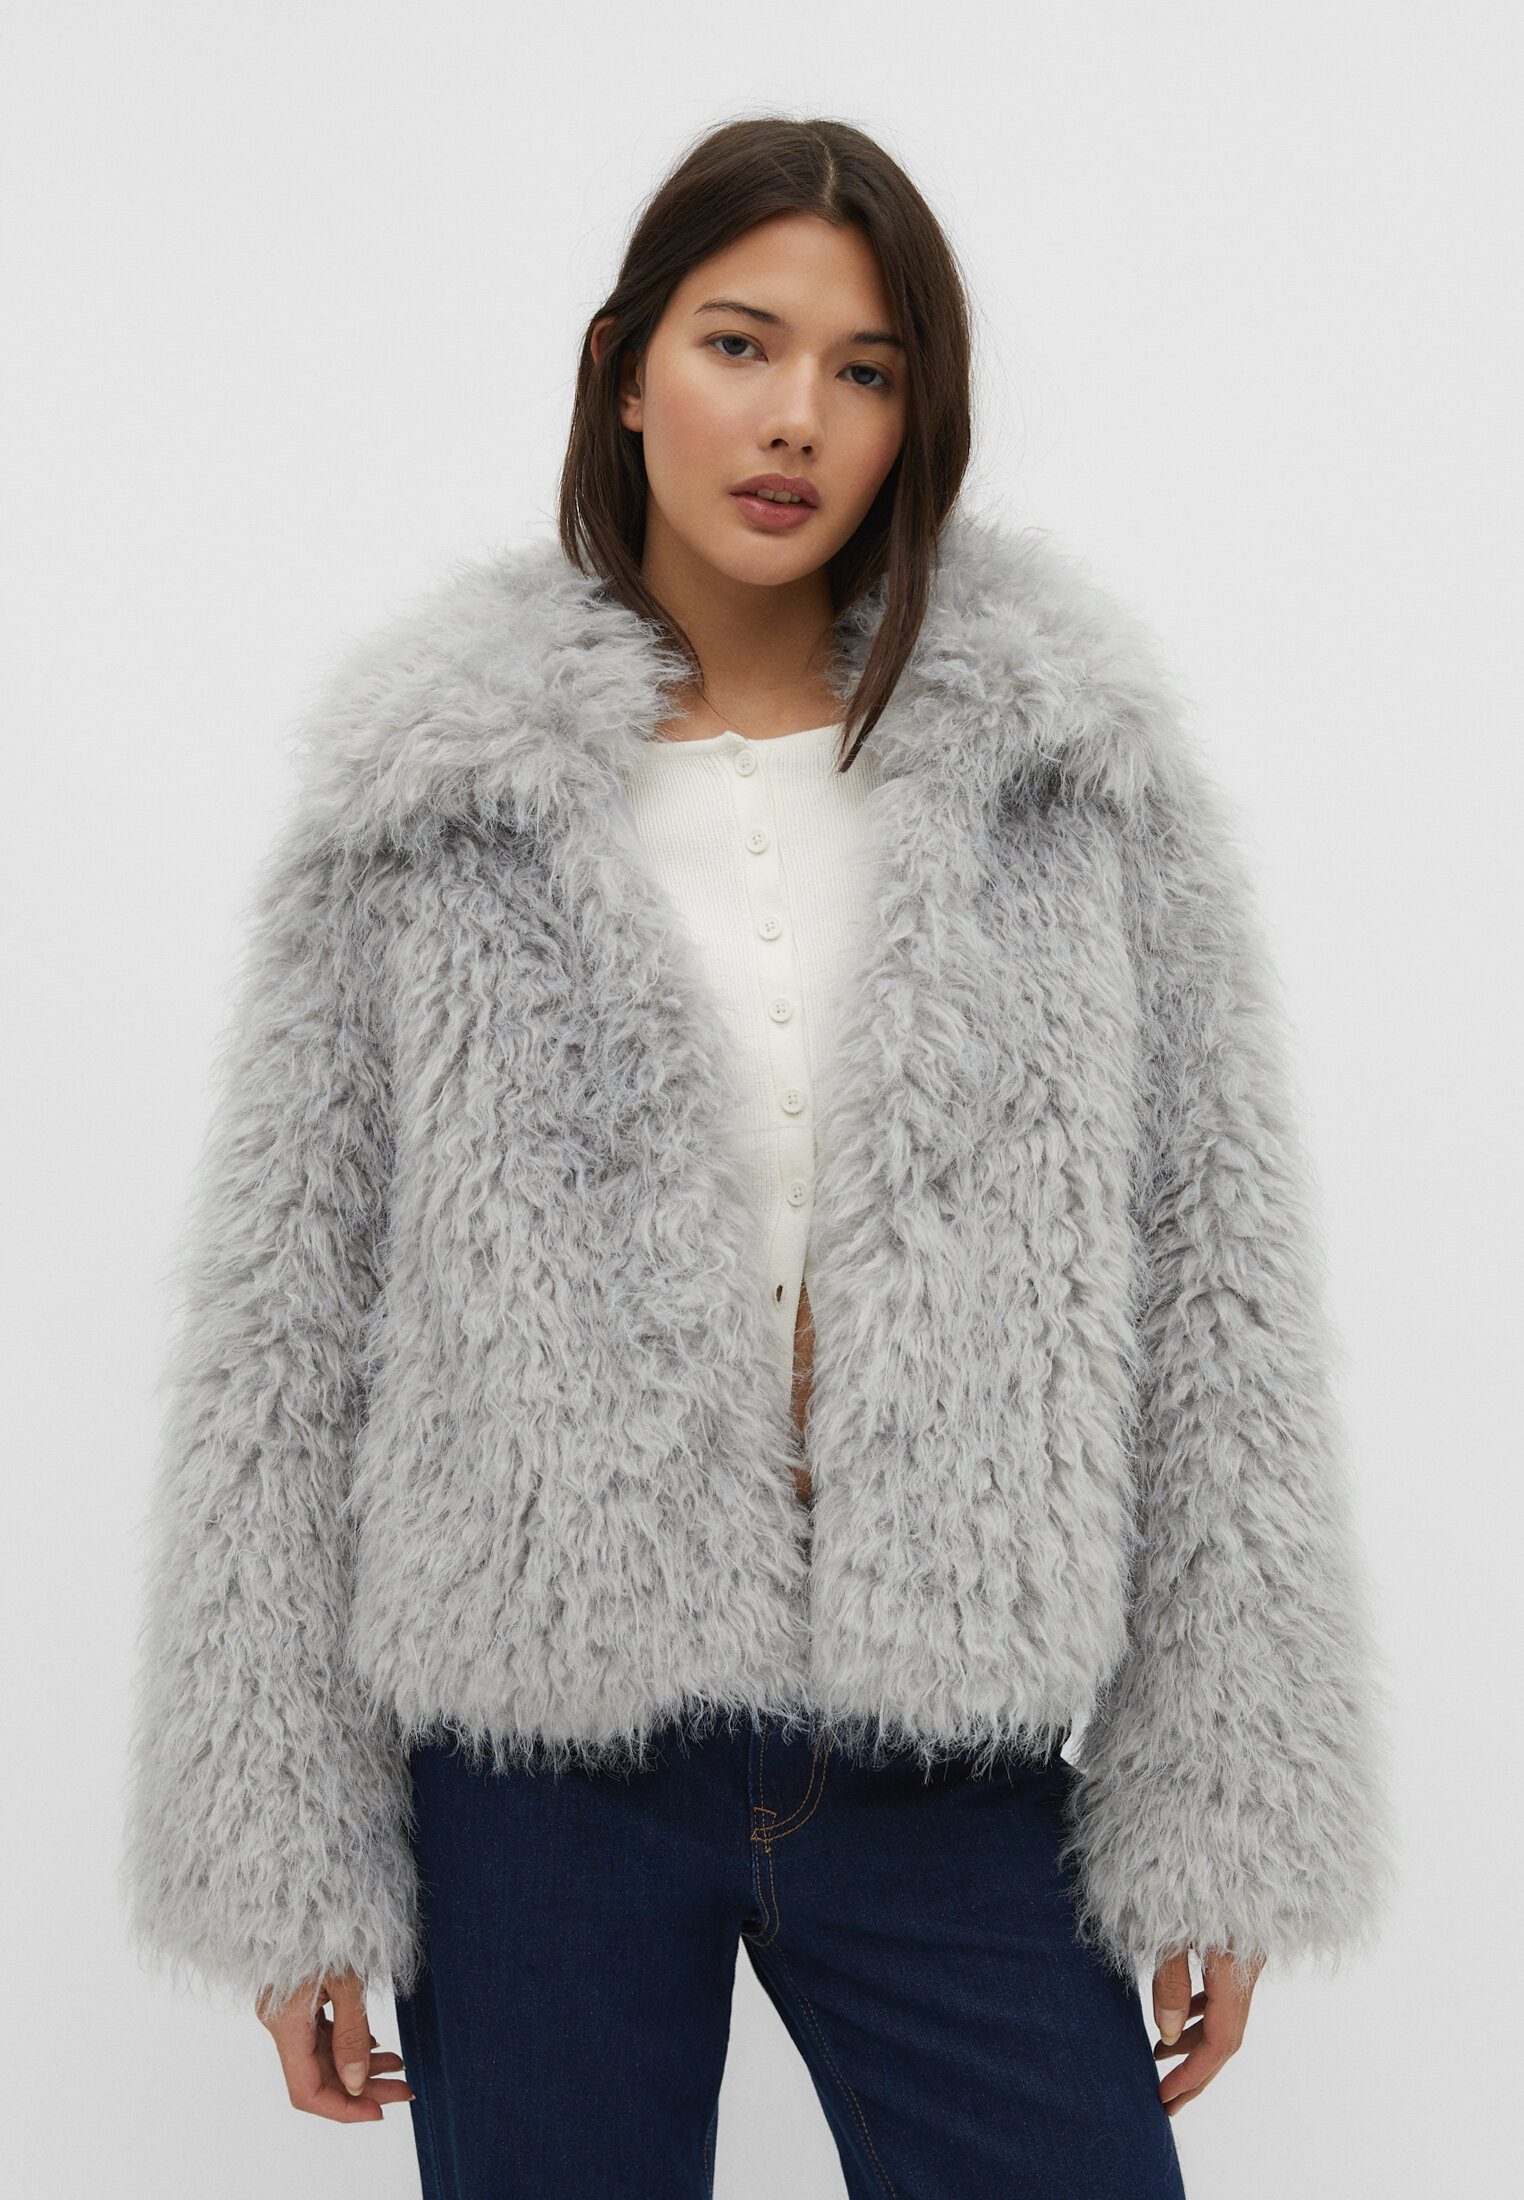 White Faux Fur Coat Women Winter Cropped Bubble Coats Lapel Collar Jackets  Fuzzy Fluffy Warm Outerwear